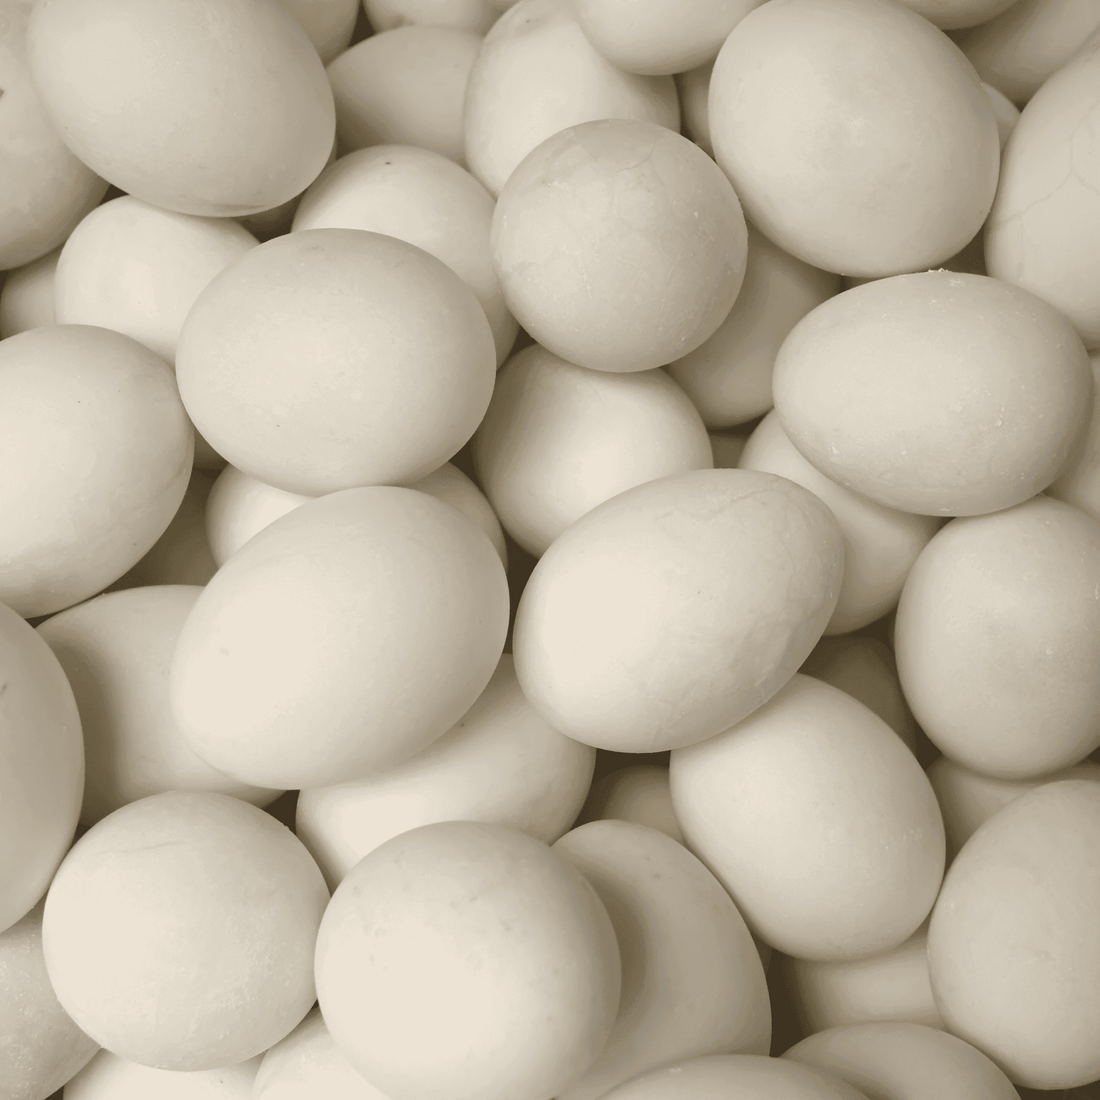 Farm Fresh Duck Eggs - 1 Dozen - White's Family Farmhouse 